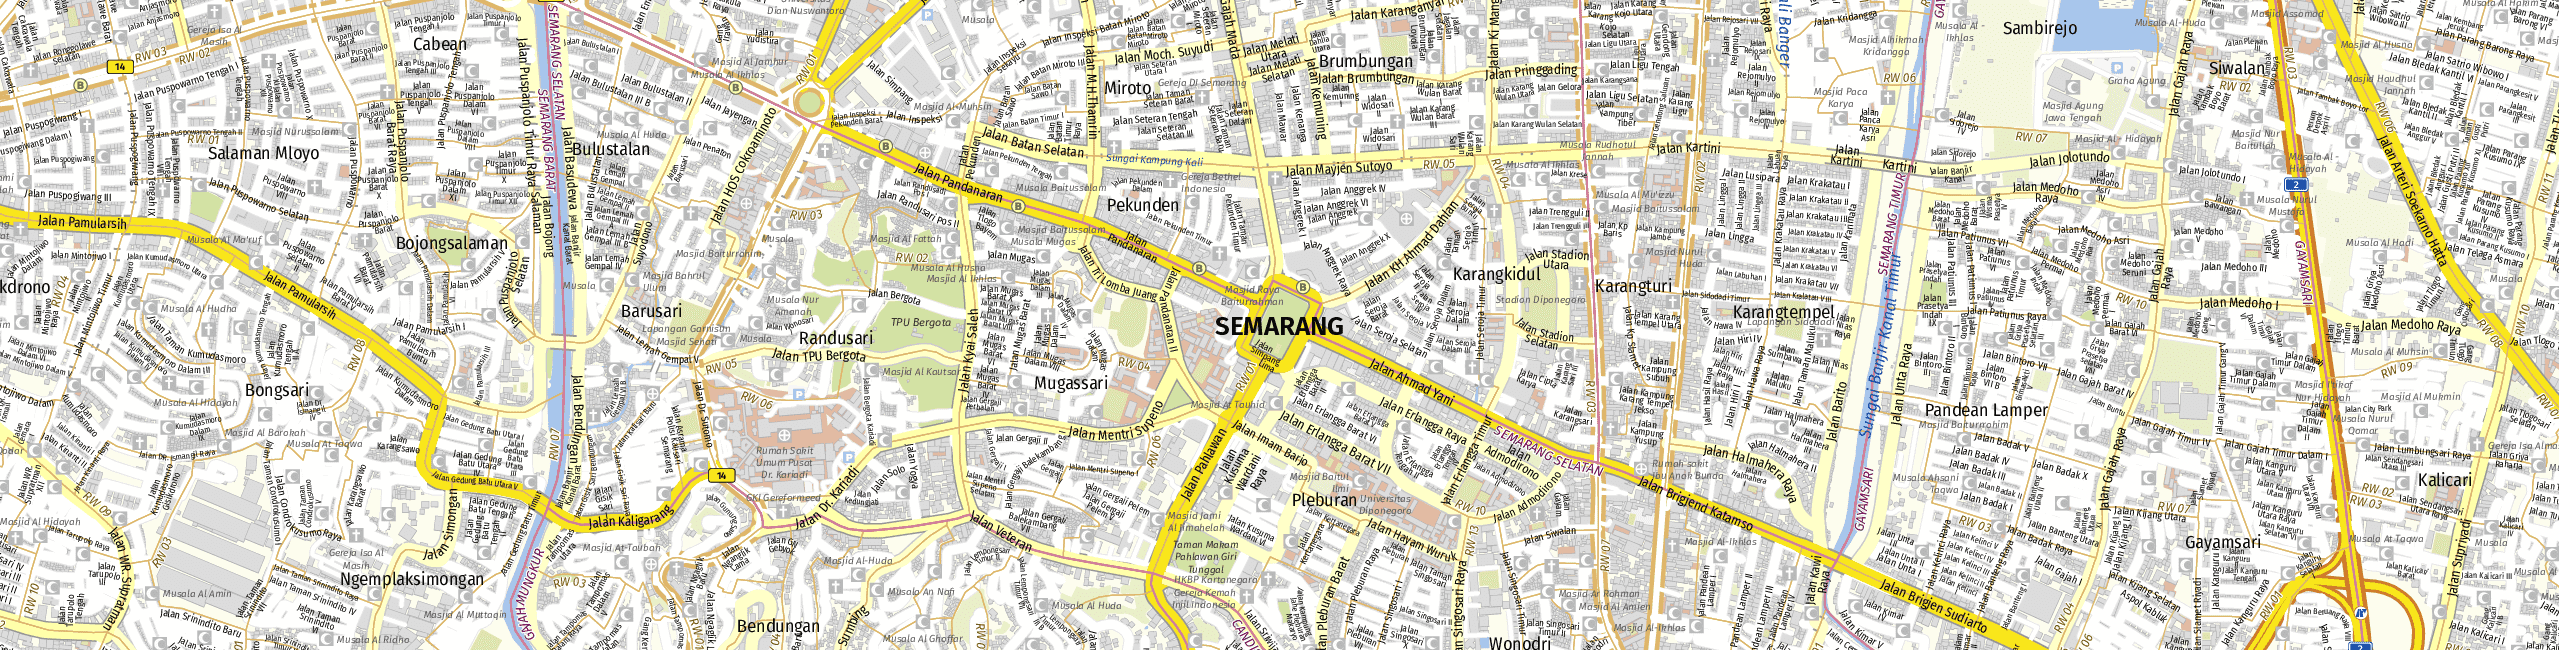 Stadtplan Semarang zum Downloaden.